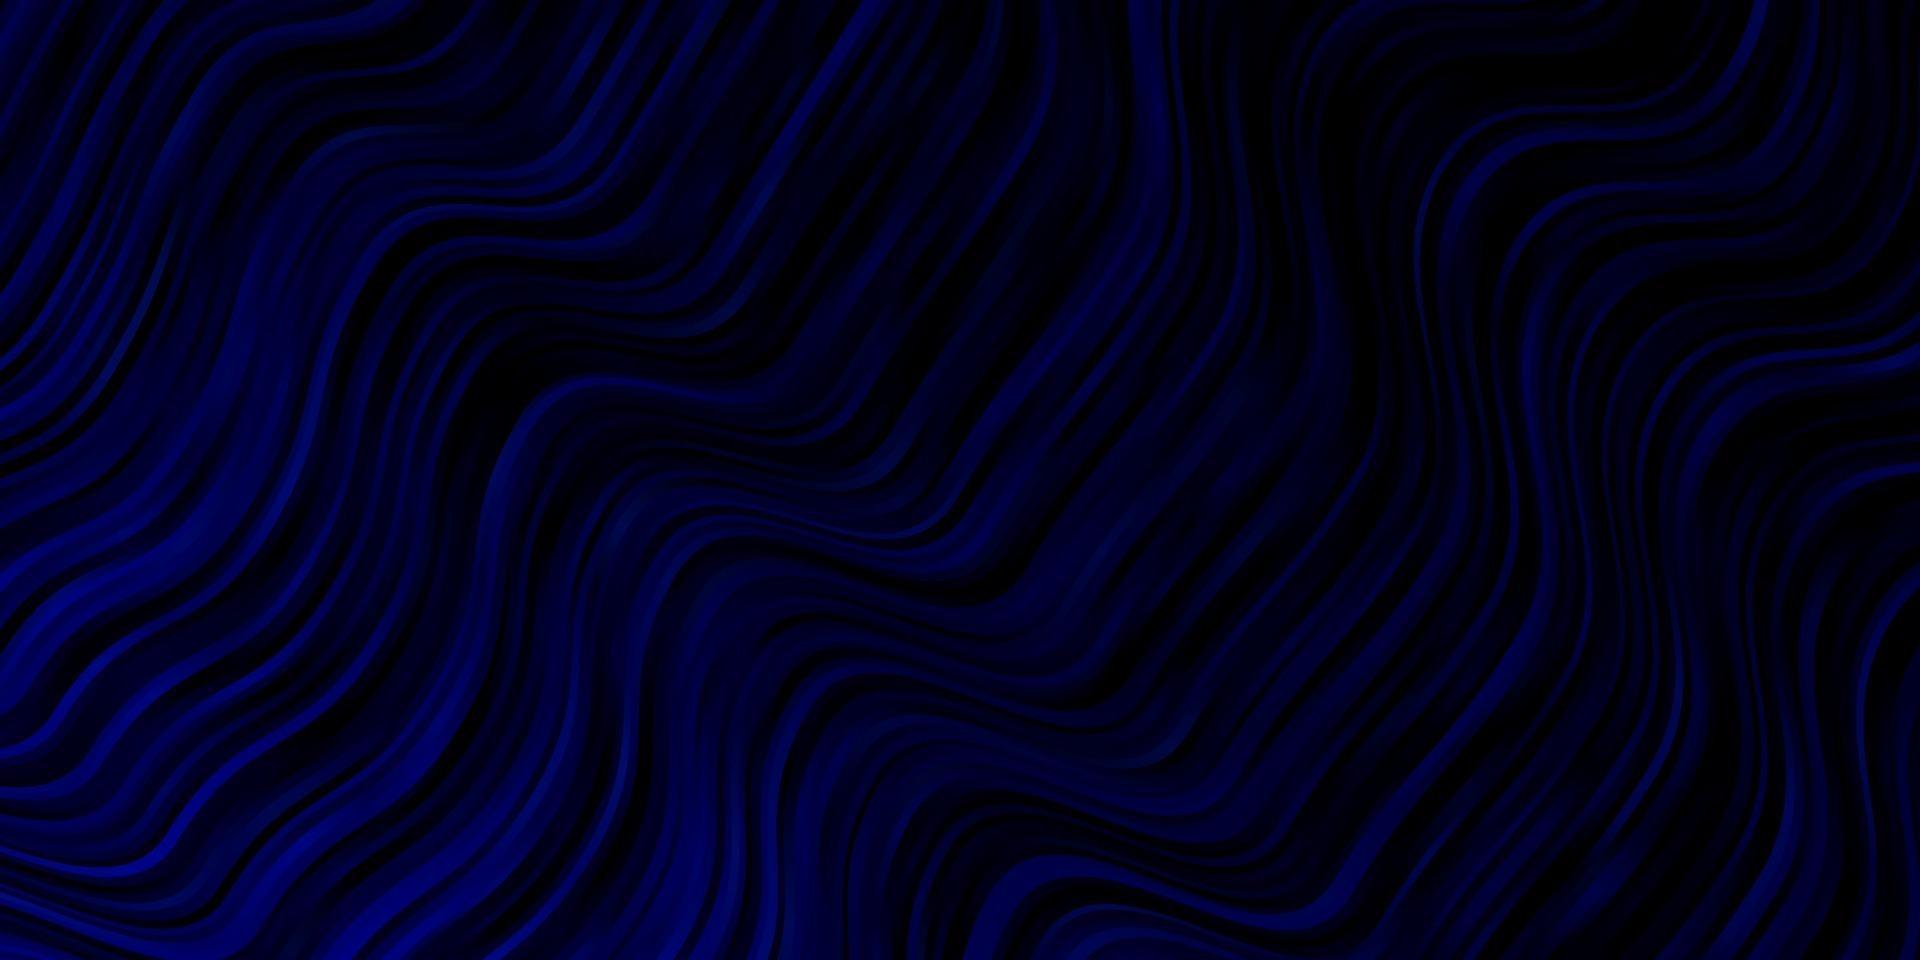 Fondo de vector azul oscuro con arcos.